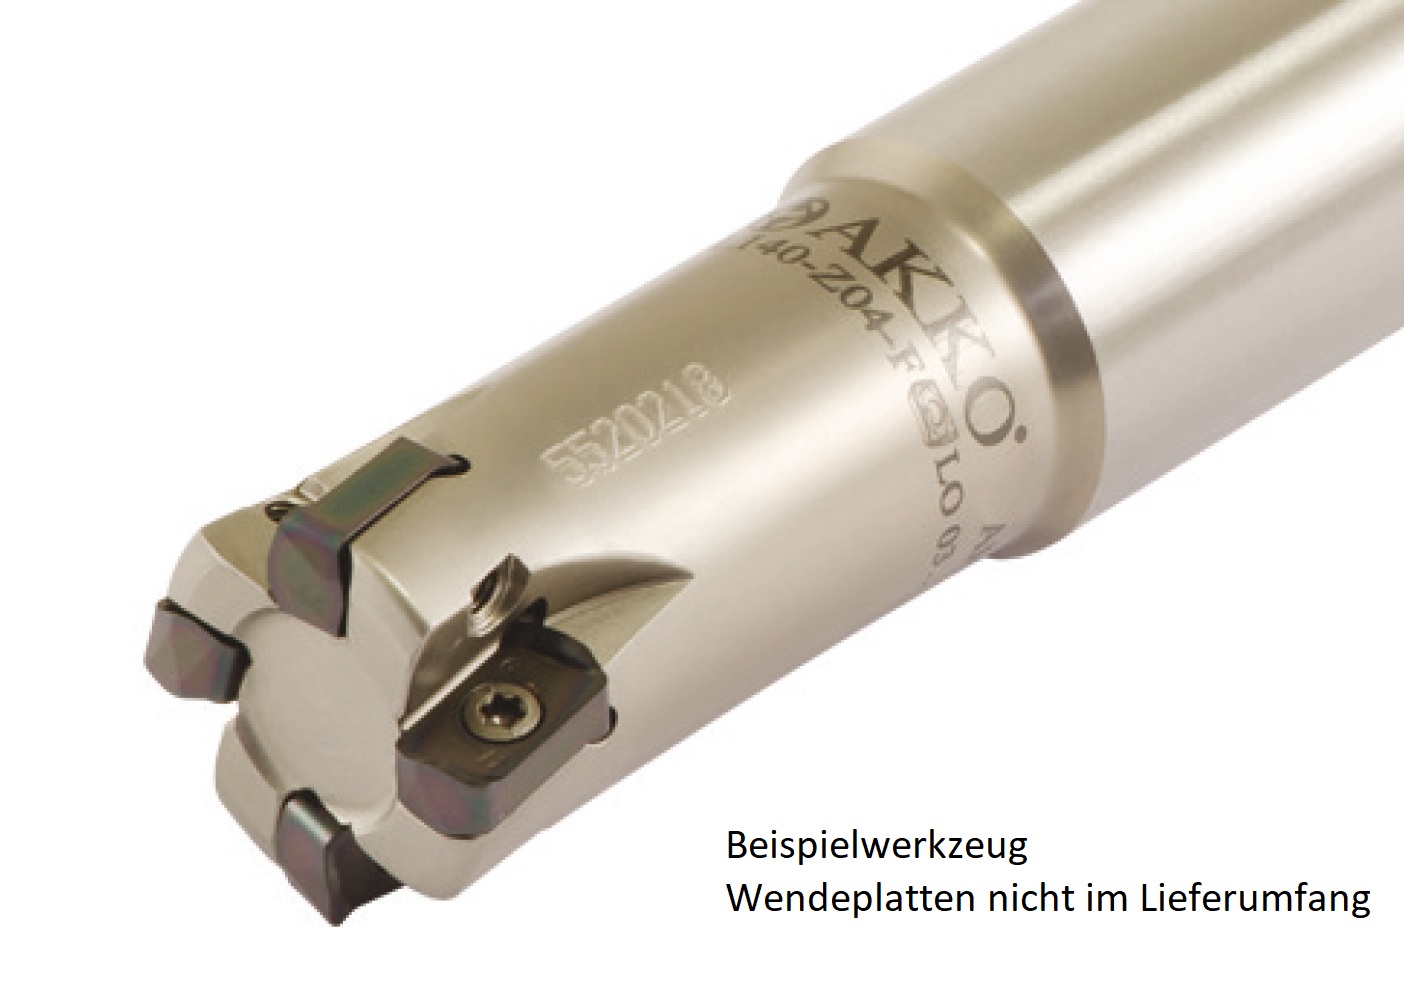 AKKO-Hochvorschub-Schaftfräser ø 20 mm für Wendeplatten, kompatibel mit Kyocera LOGU 0303....
Schaft-ø 20, mit Innenkühlung, Z=3